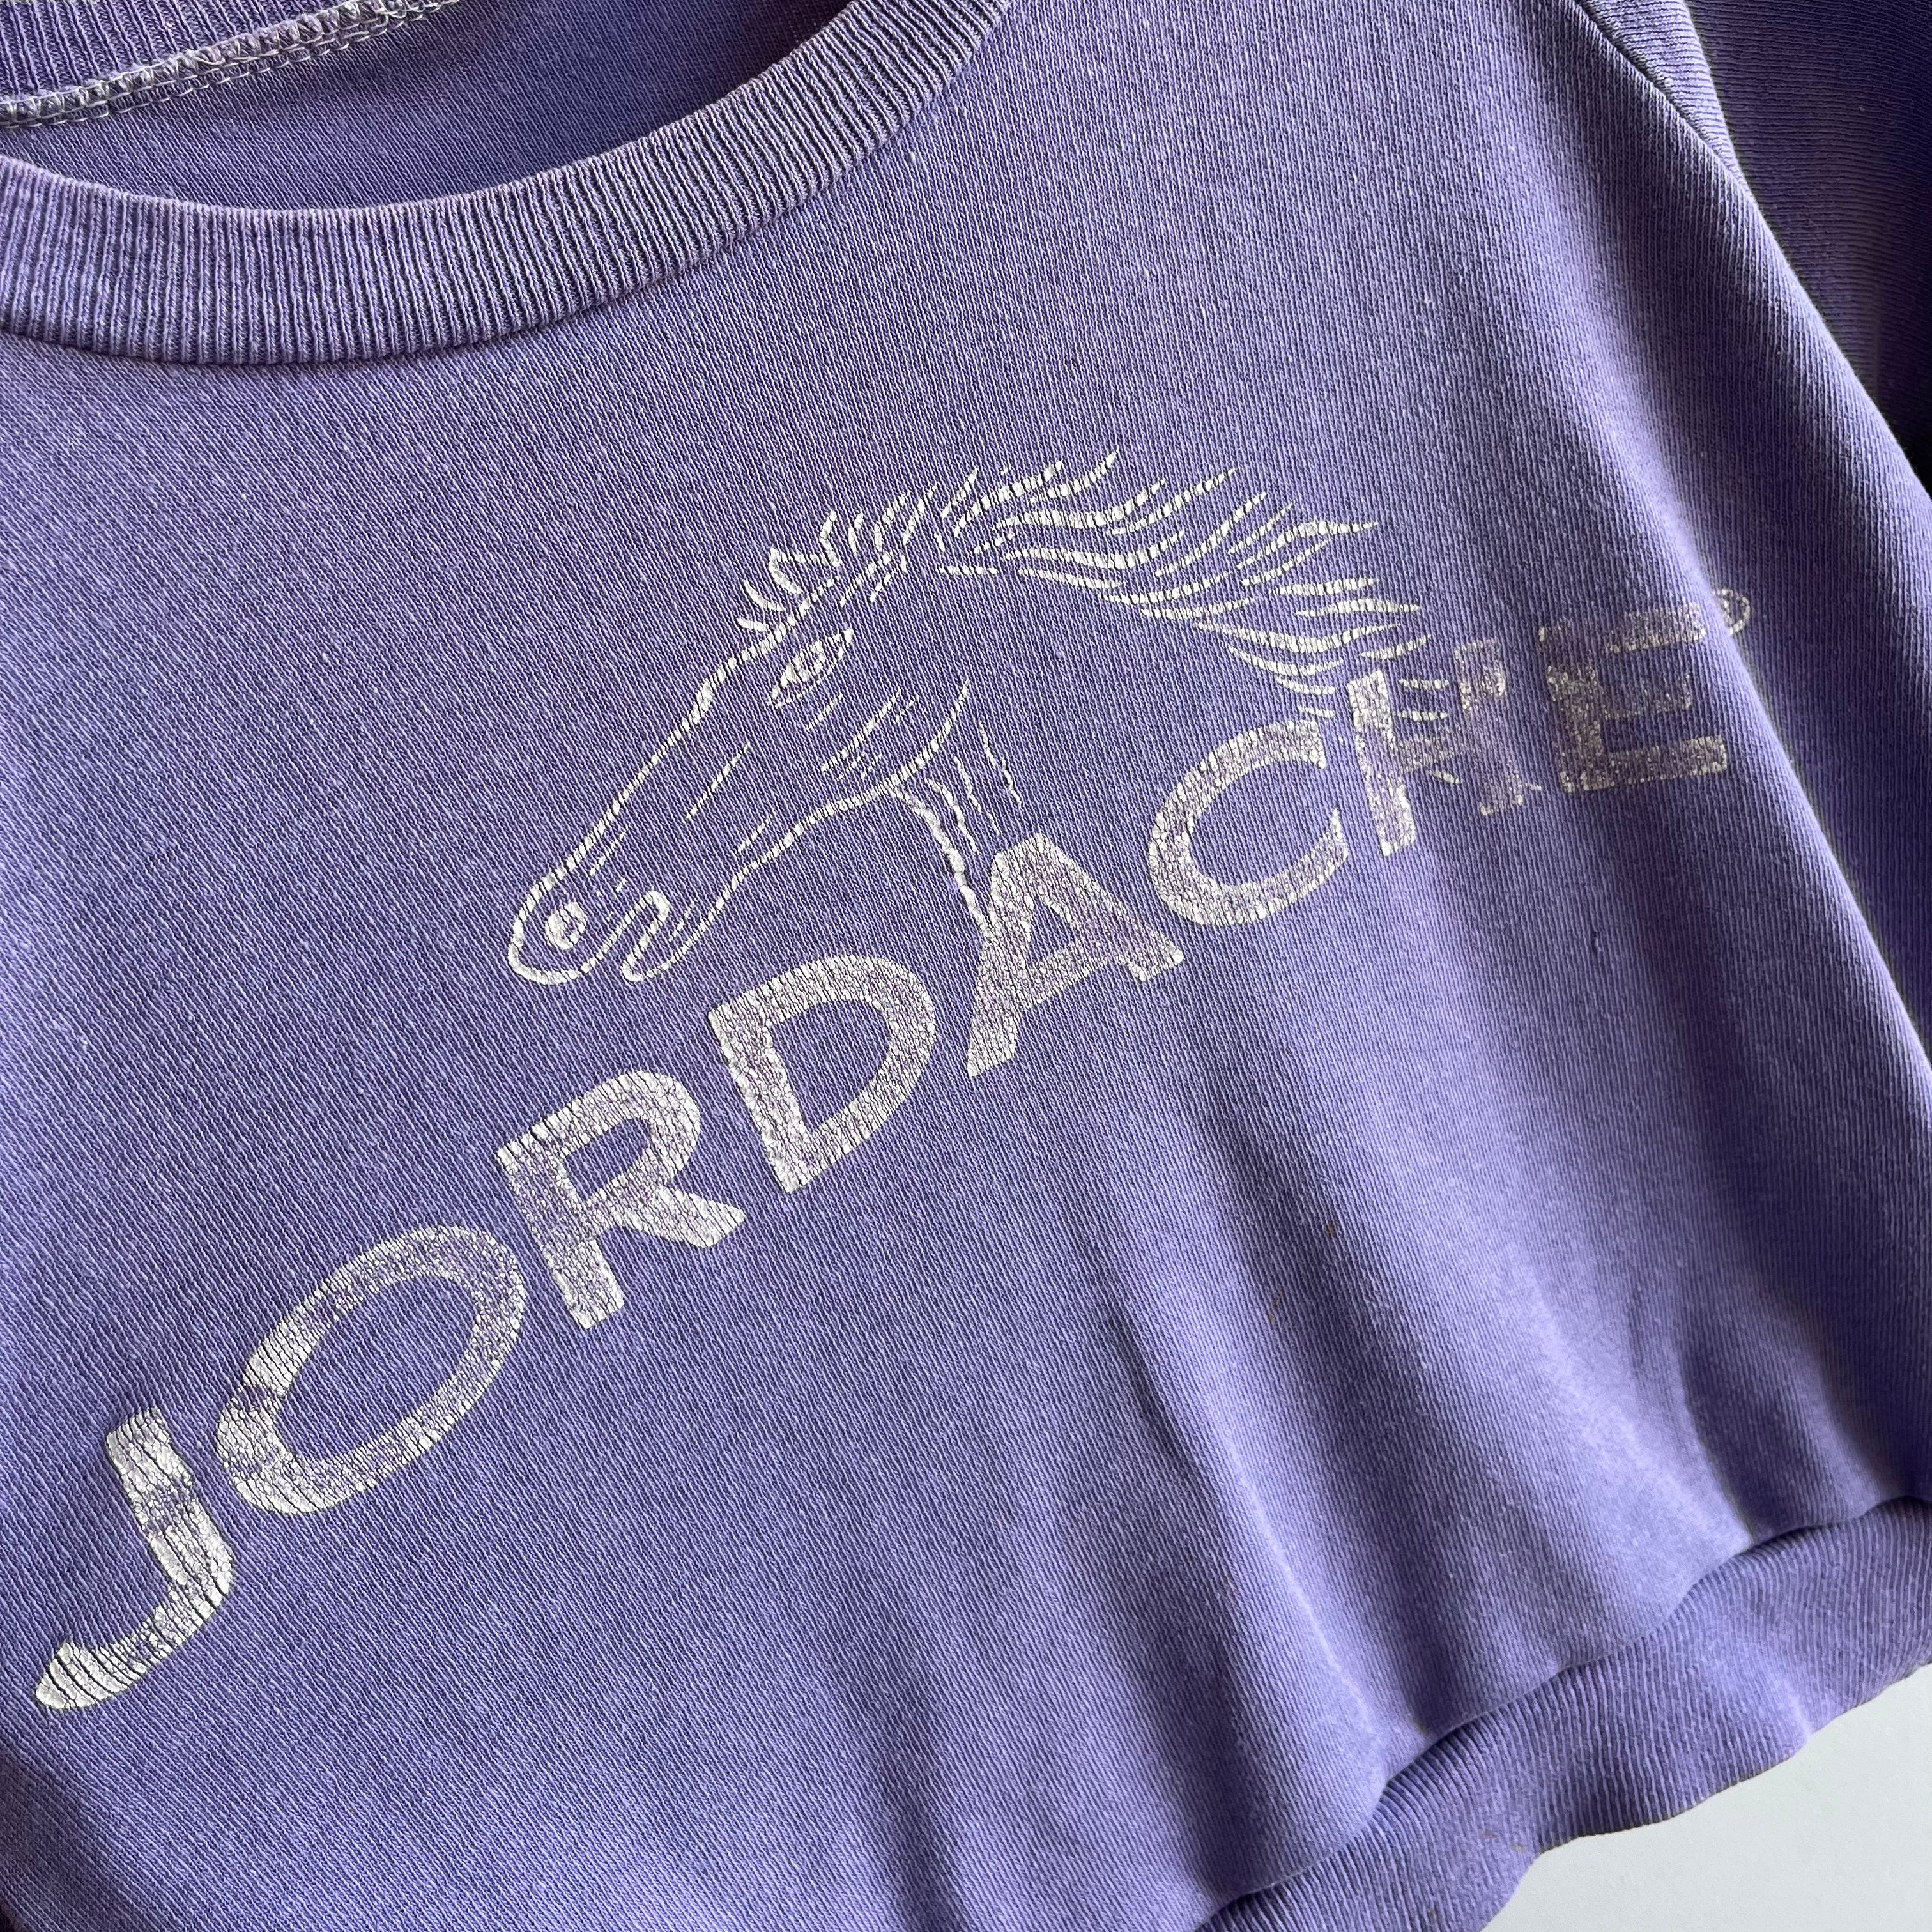 1980s Jordache Crop Top Sweatshirt - OMFG